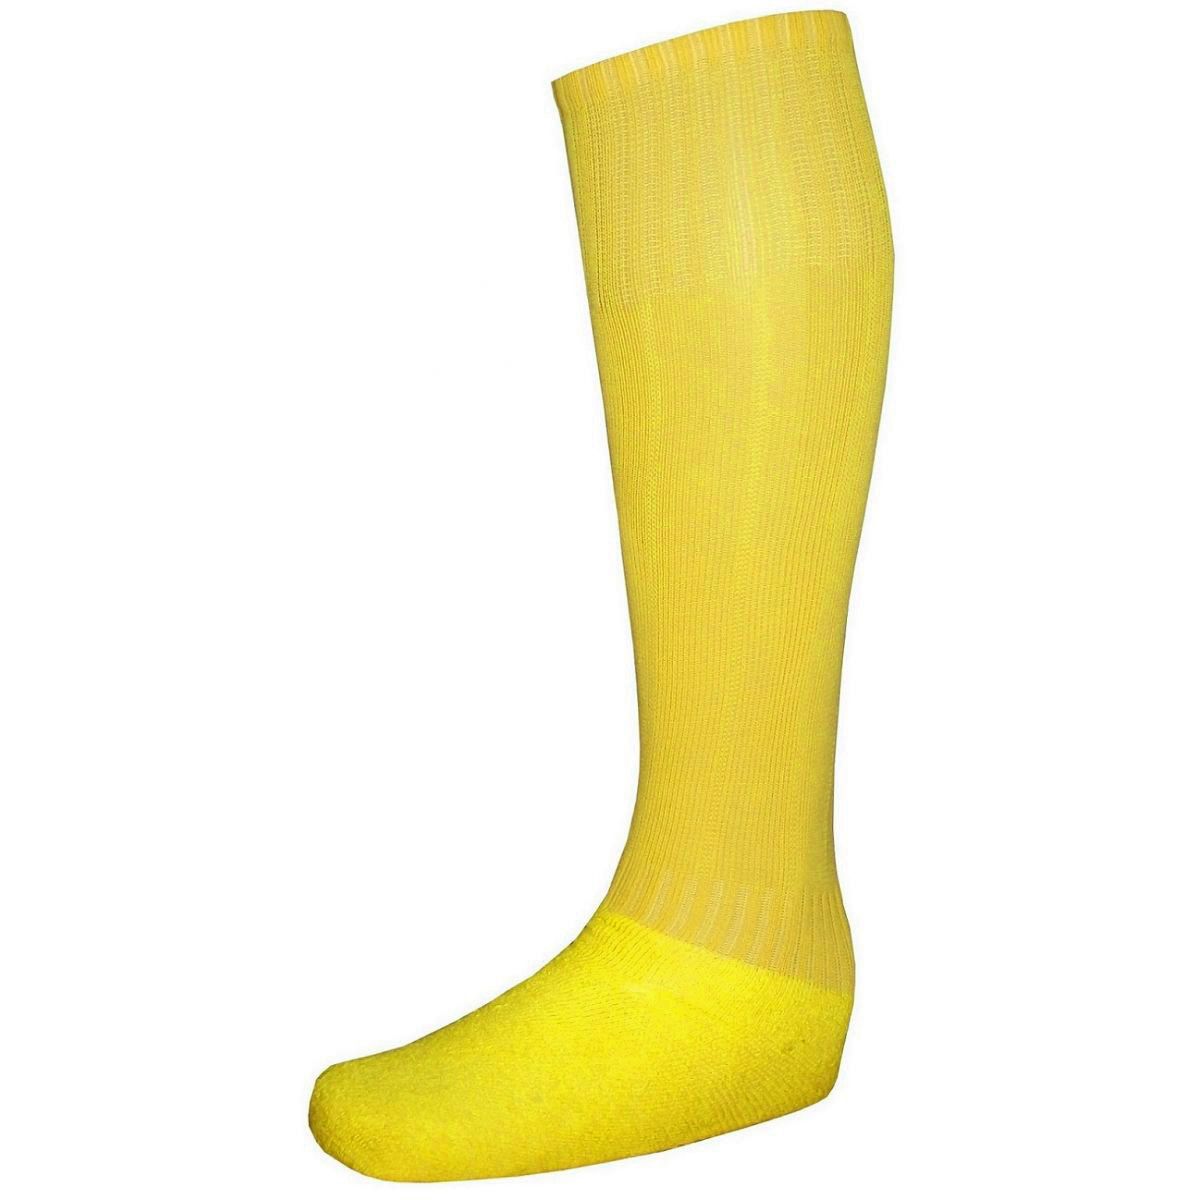 Uniforme Esportivo Completo modelo Suécia 14+1 (14 camisas Preto/Amarelo + 14 calções Madrid Amarelo + 14 pares de meiões Amarelos + 1 conjunto de goleiro) + Brindes